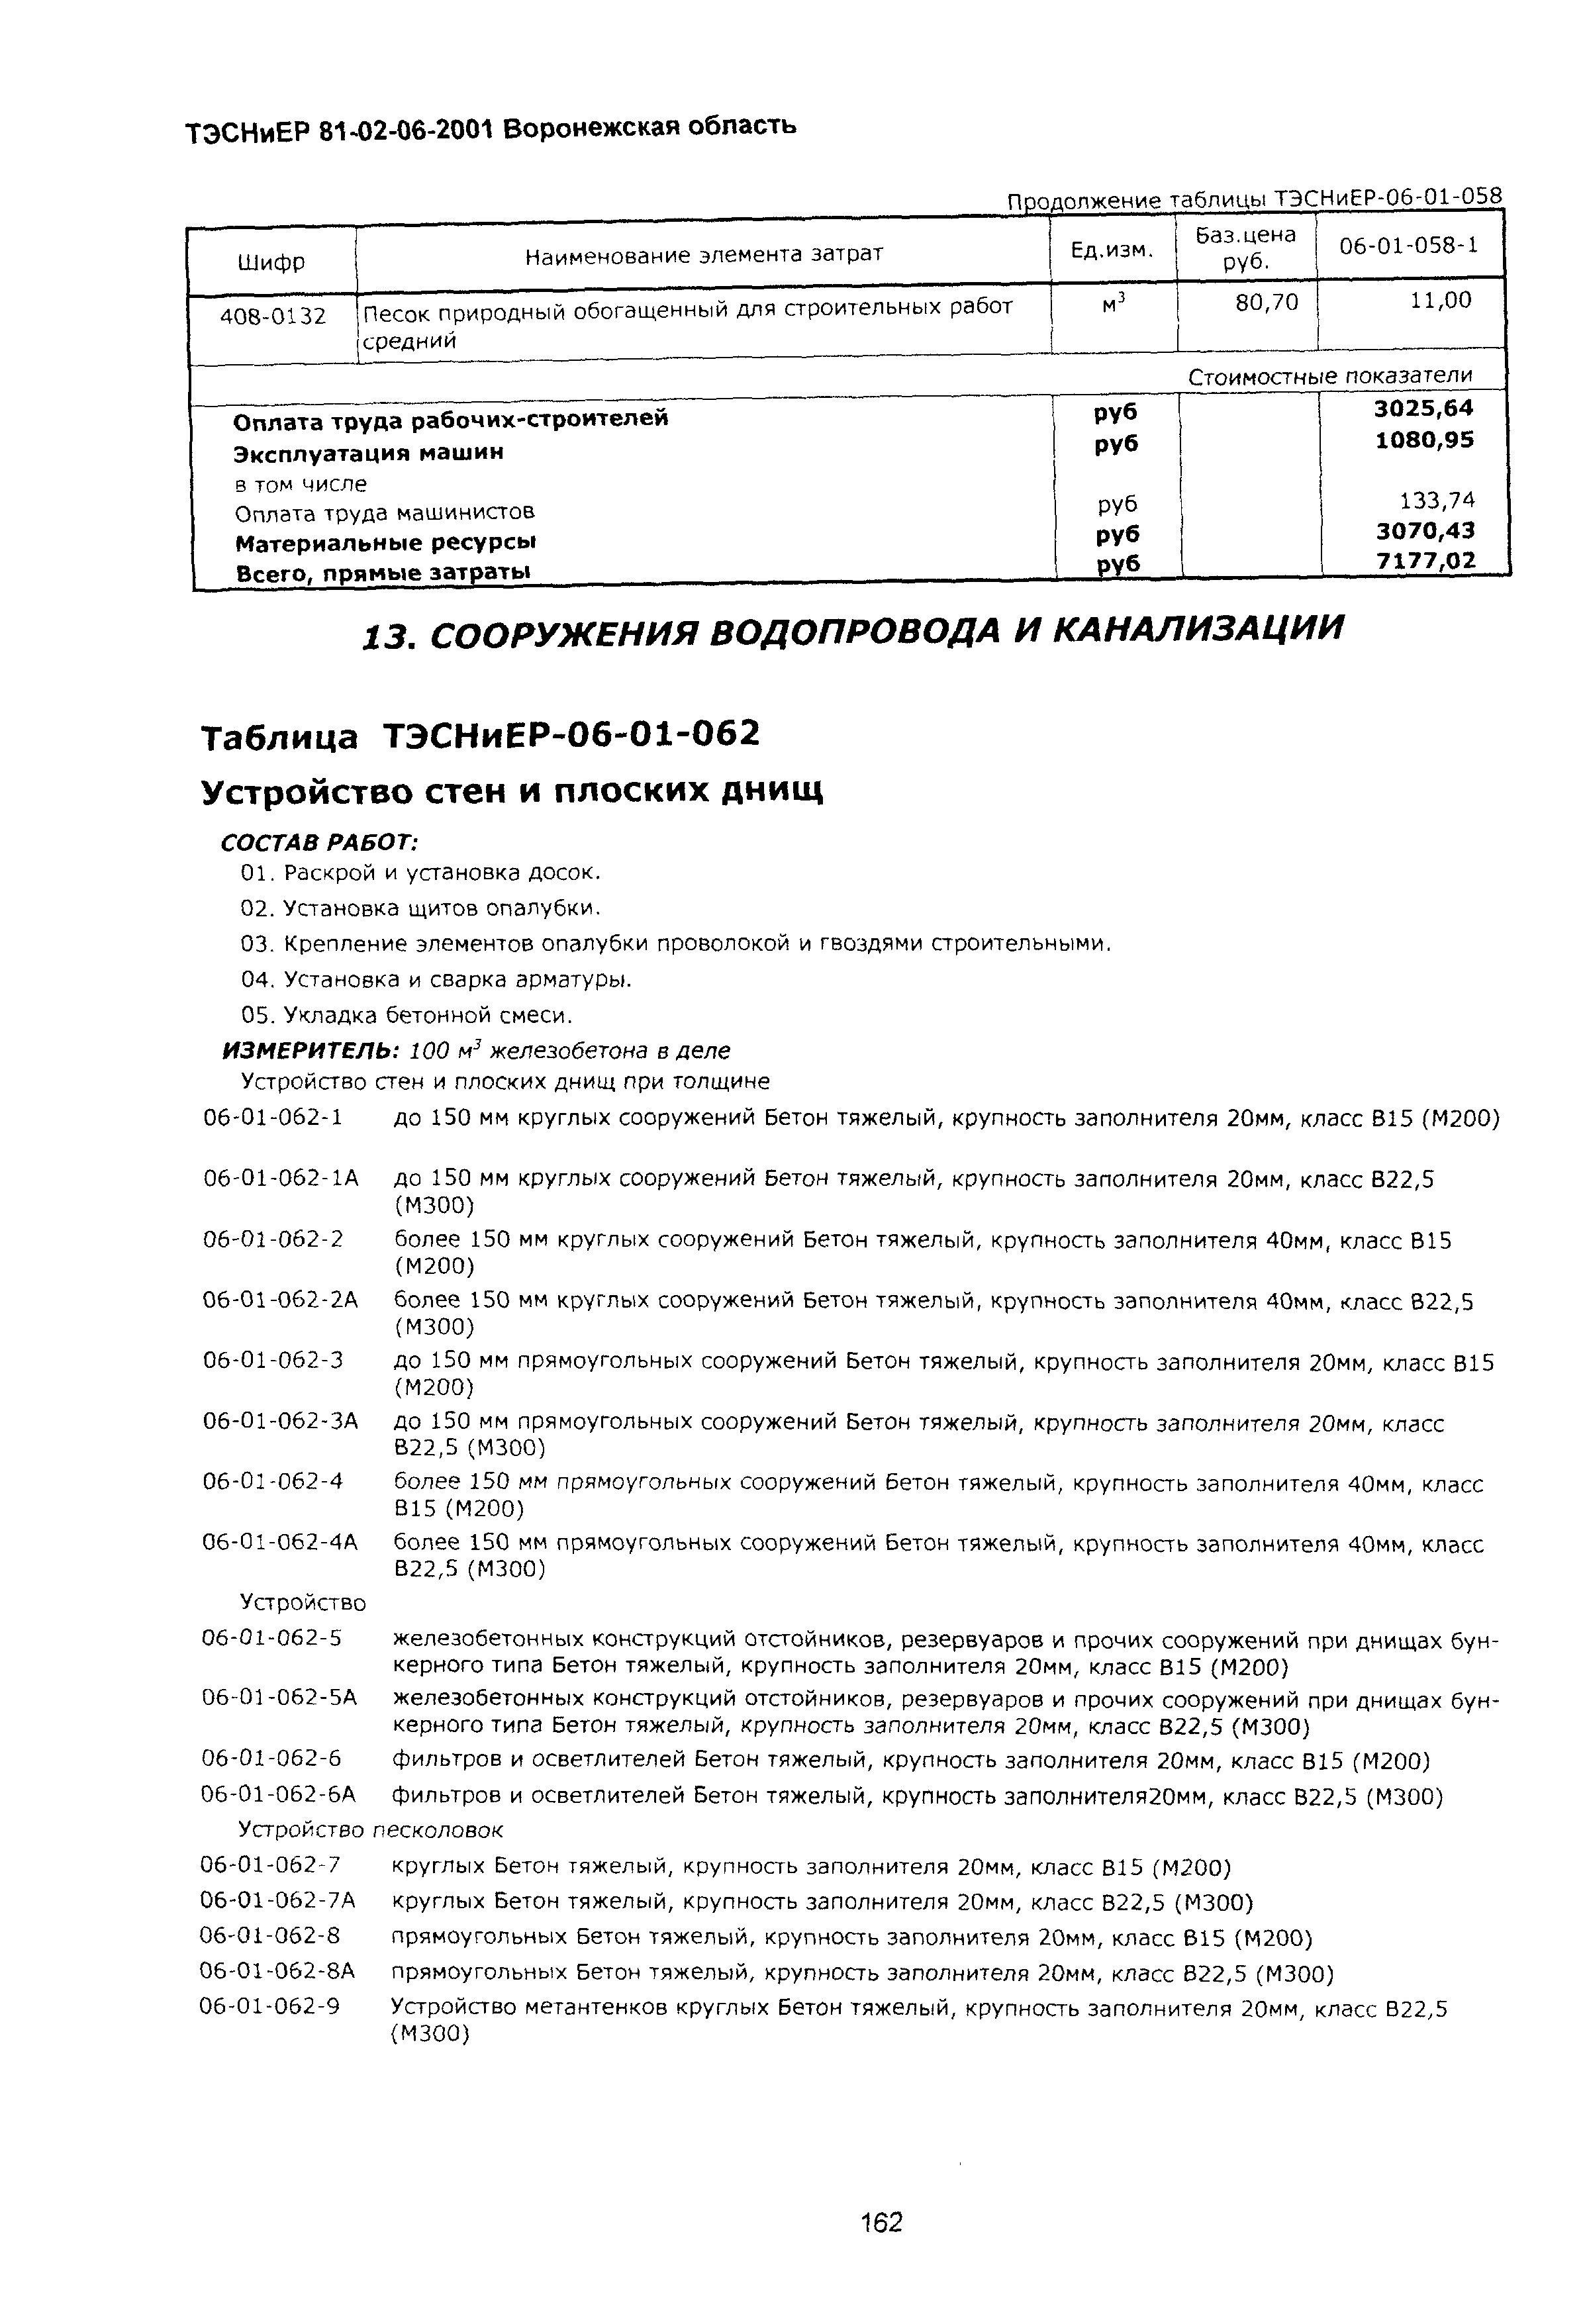 ТЭСНиЕР Воронежской области 81-02-06-2001